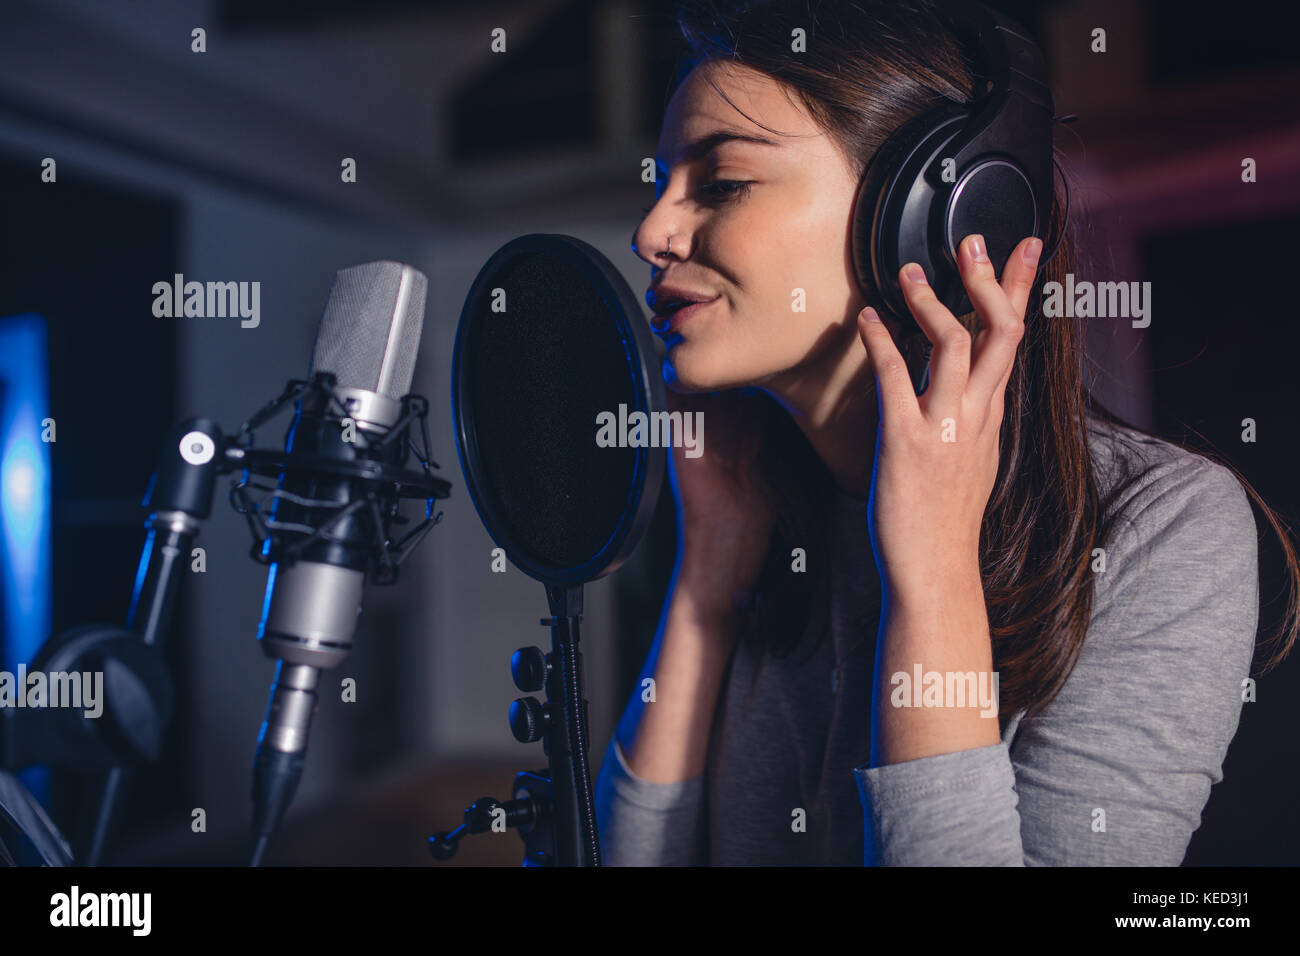 Close up of female vocal artist chanter dans un studio d'enregistrement. Femme chanteuse playback chantant une chanson. Banque D'Images